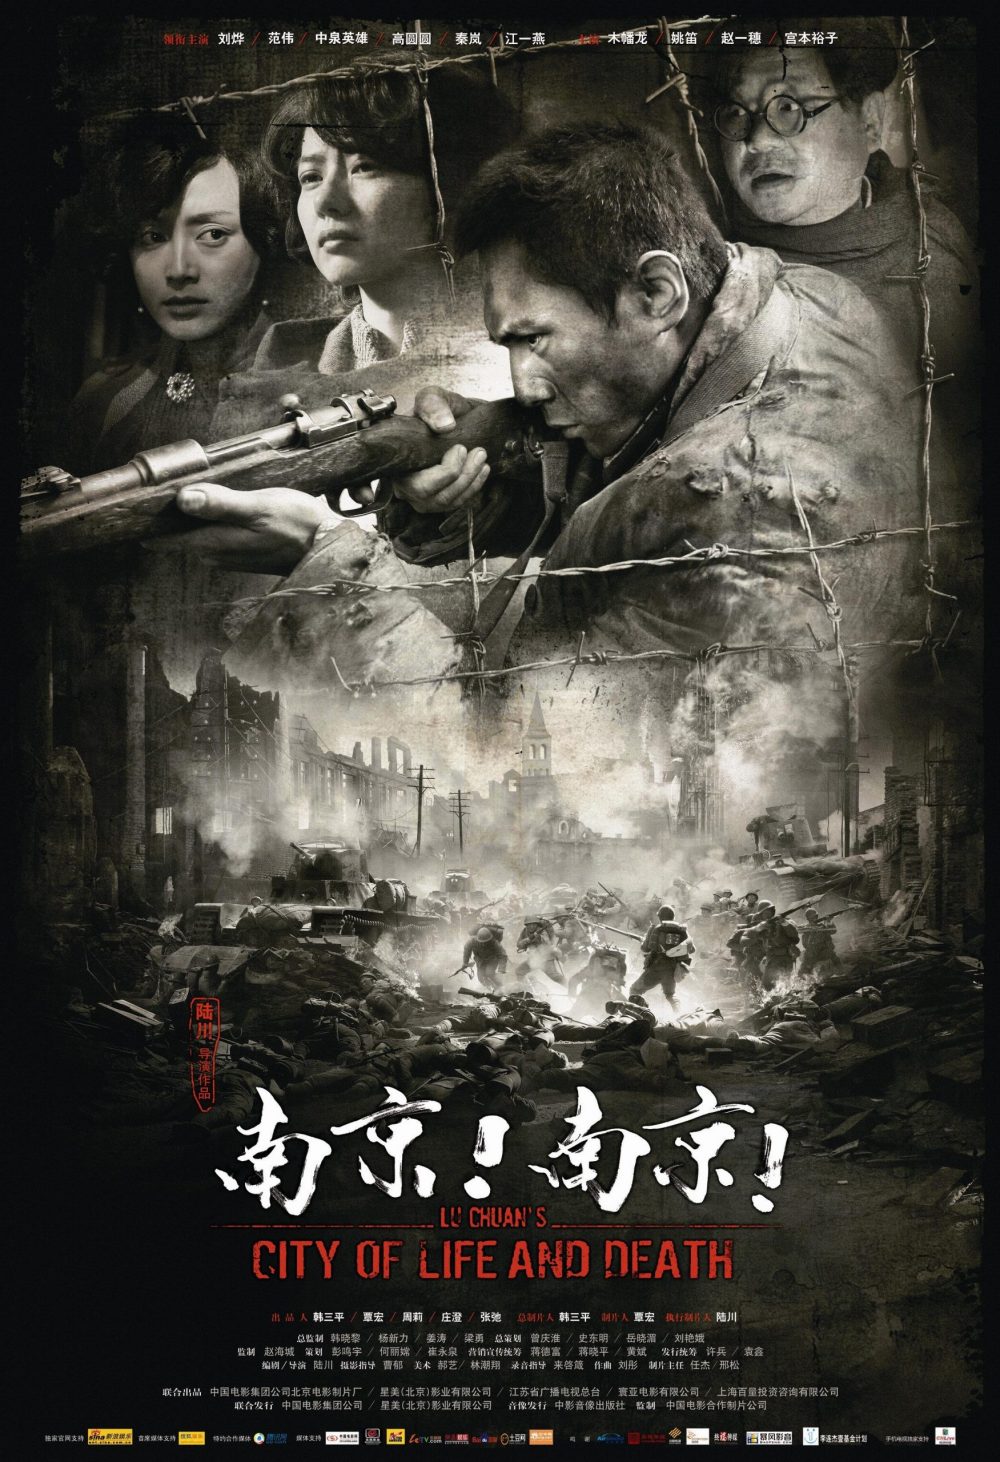 harper bazaar phim trung quoc chong nhat hay nhat 3 scaled e1664023899852 - Top 20 bộ phim Trung Quốc chống Nhật hay nhất màn ảnh Hoa ngữ